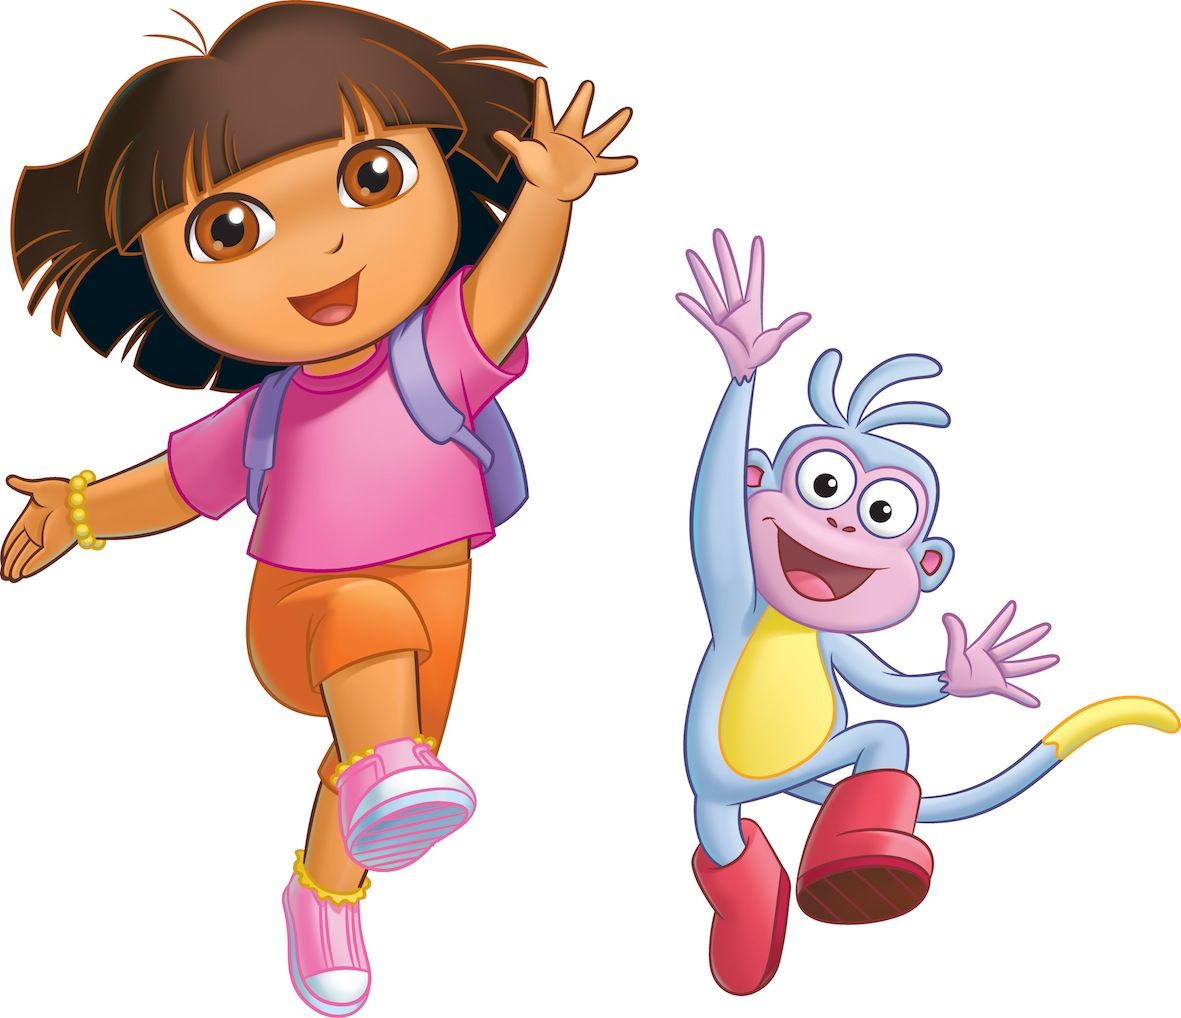 Dora cartoon, Dora the explorer, Dora the explorer image